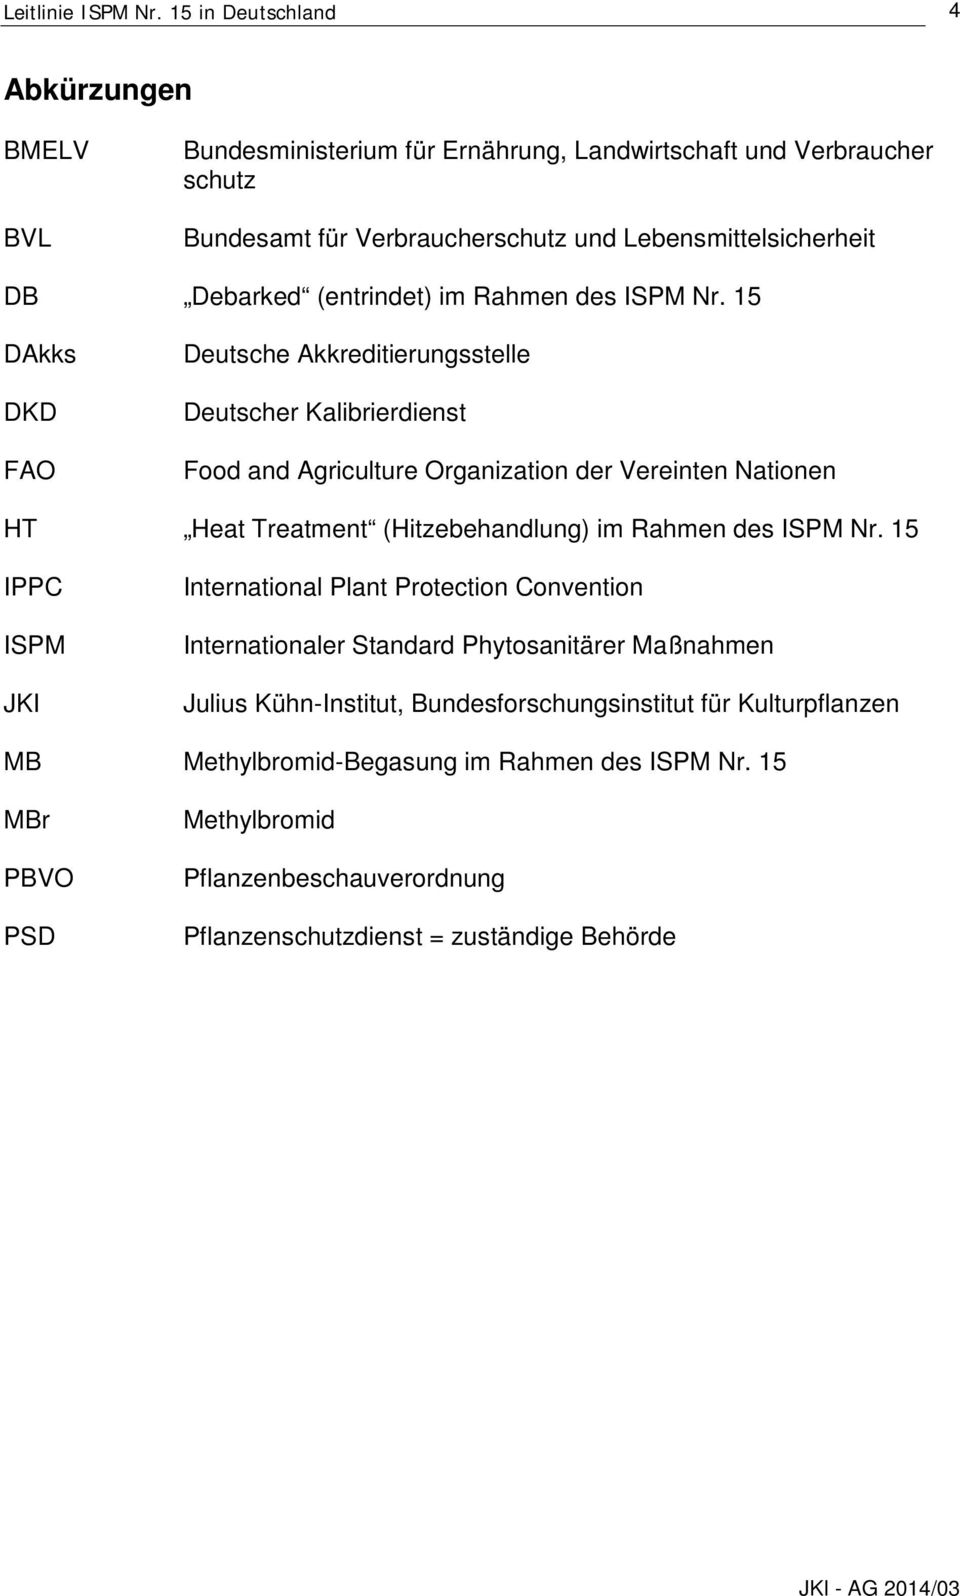 15 DAkks DKD FAO Deutsche Akkreditierungsstelle Deutscher Kalibrierdienst Food and Agriculture Organization der Vereinten Nationen HT Heat Treatment (Hitzebehandlung)  15 IPPC